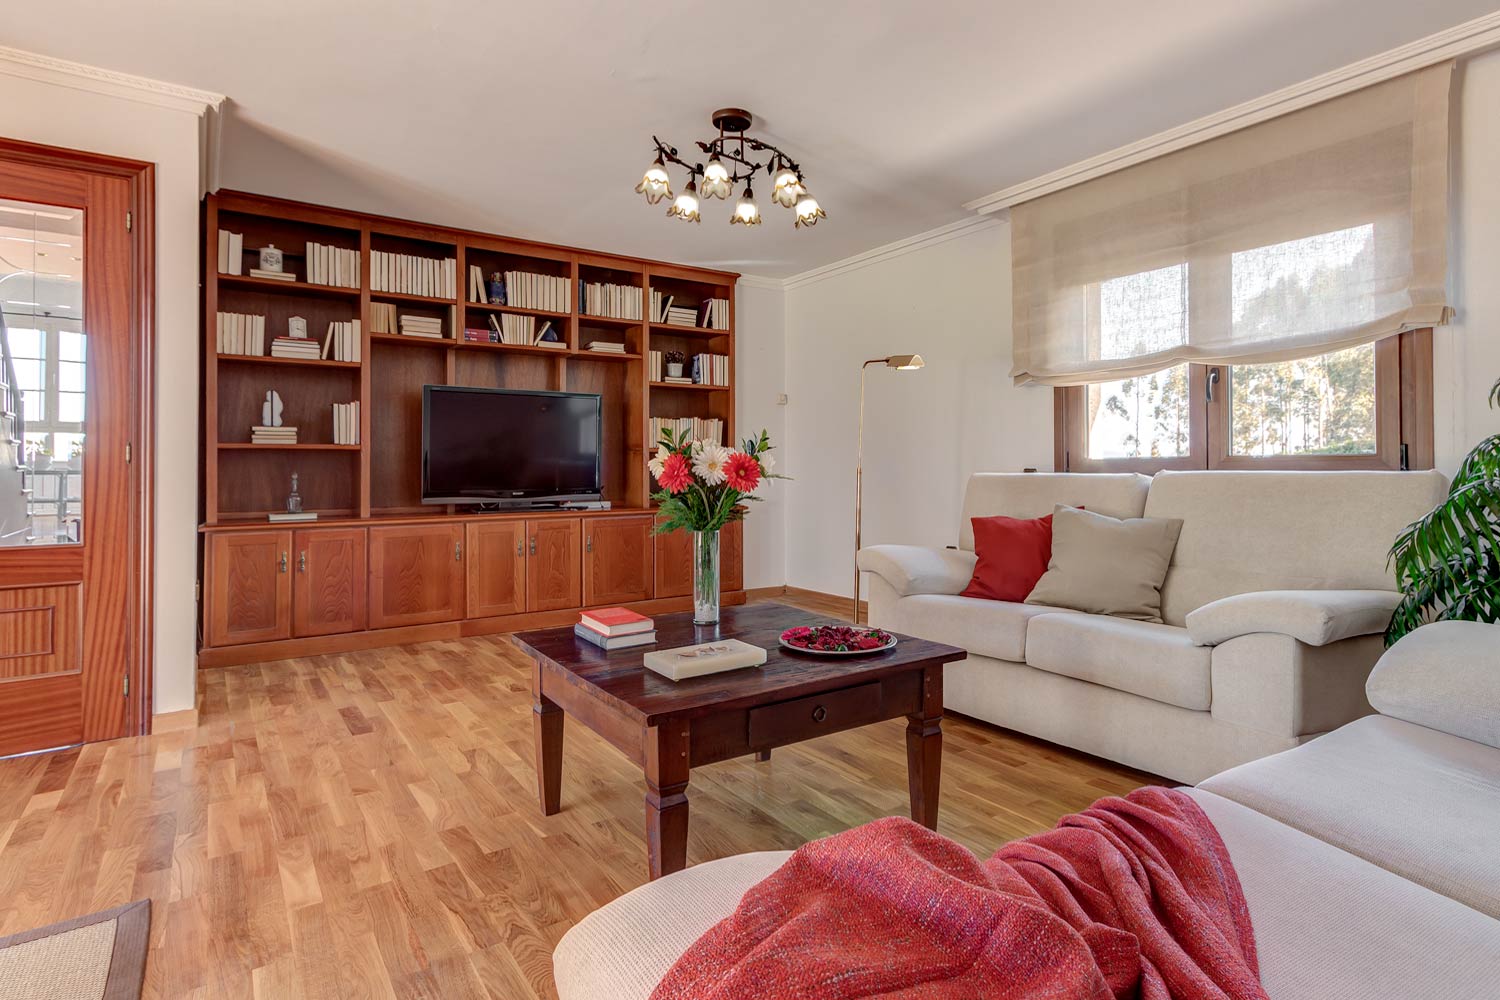 Salón de estética clásica, con mueble librería de madera y sofás beige_rojo como color de acento